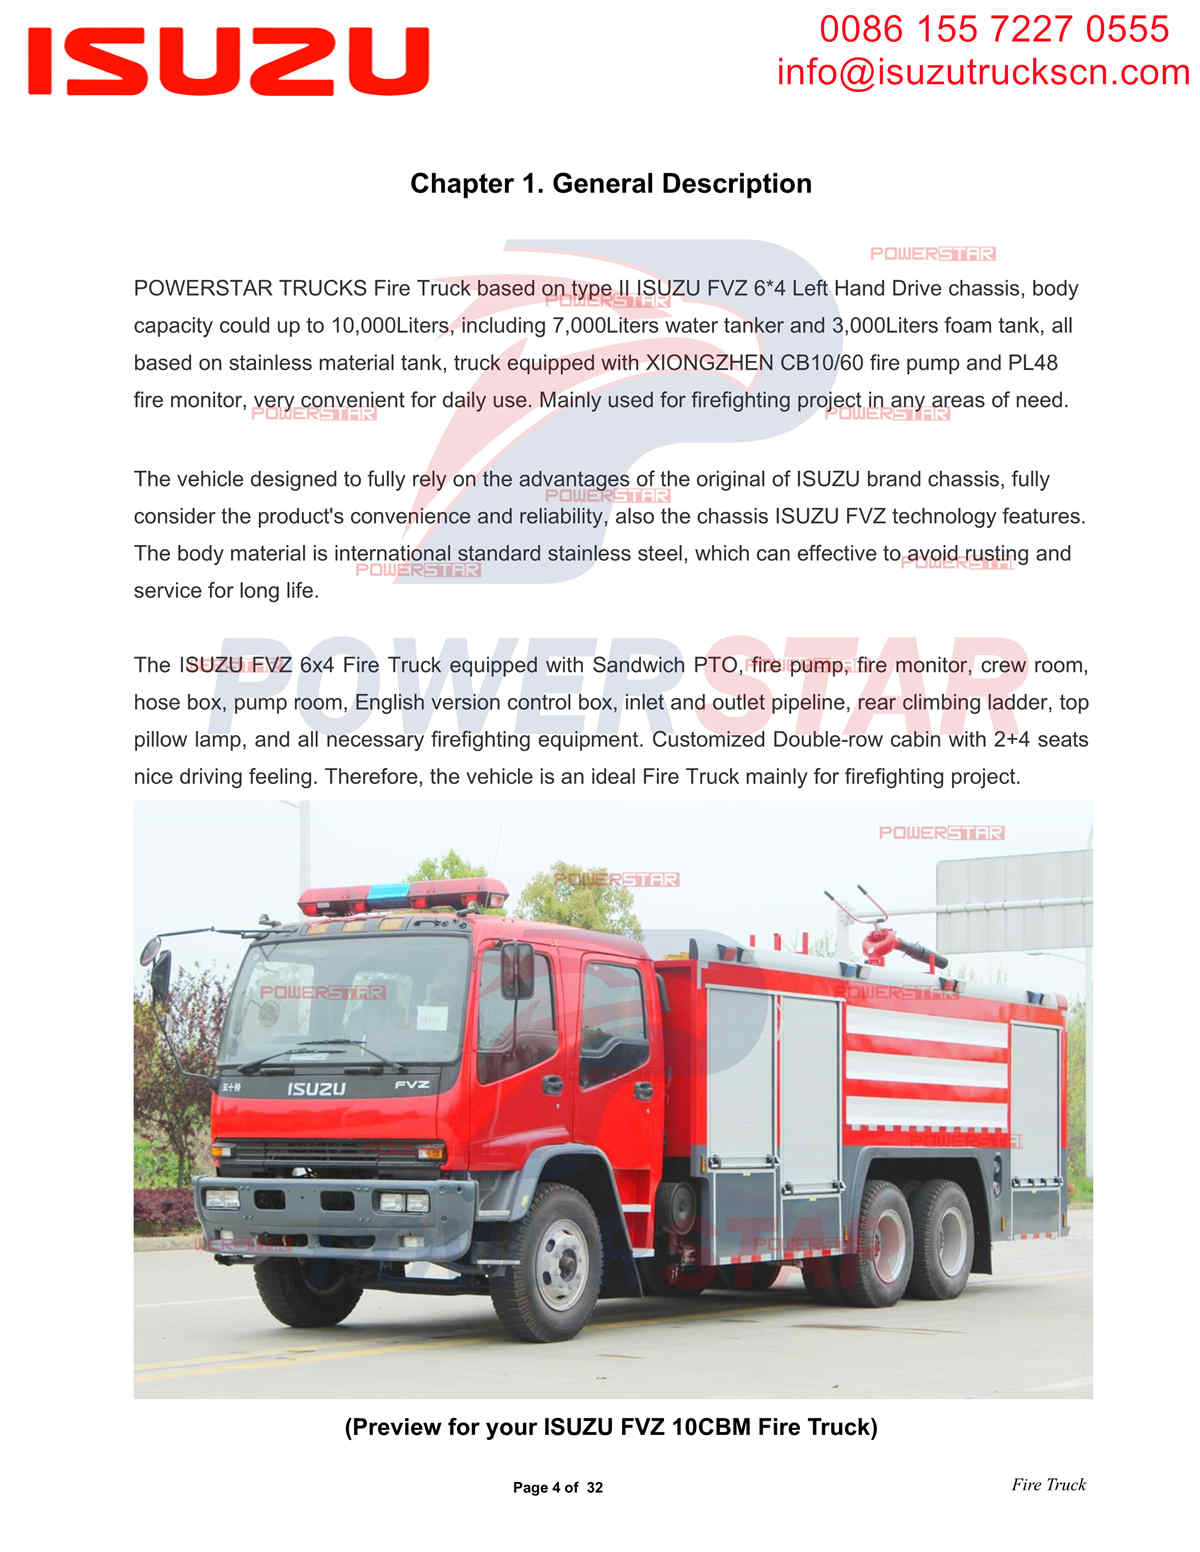 تصدير POWERSTAR ISUZU FVZ Fire Truck إفريقيا